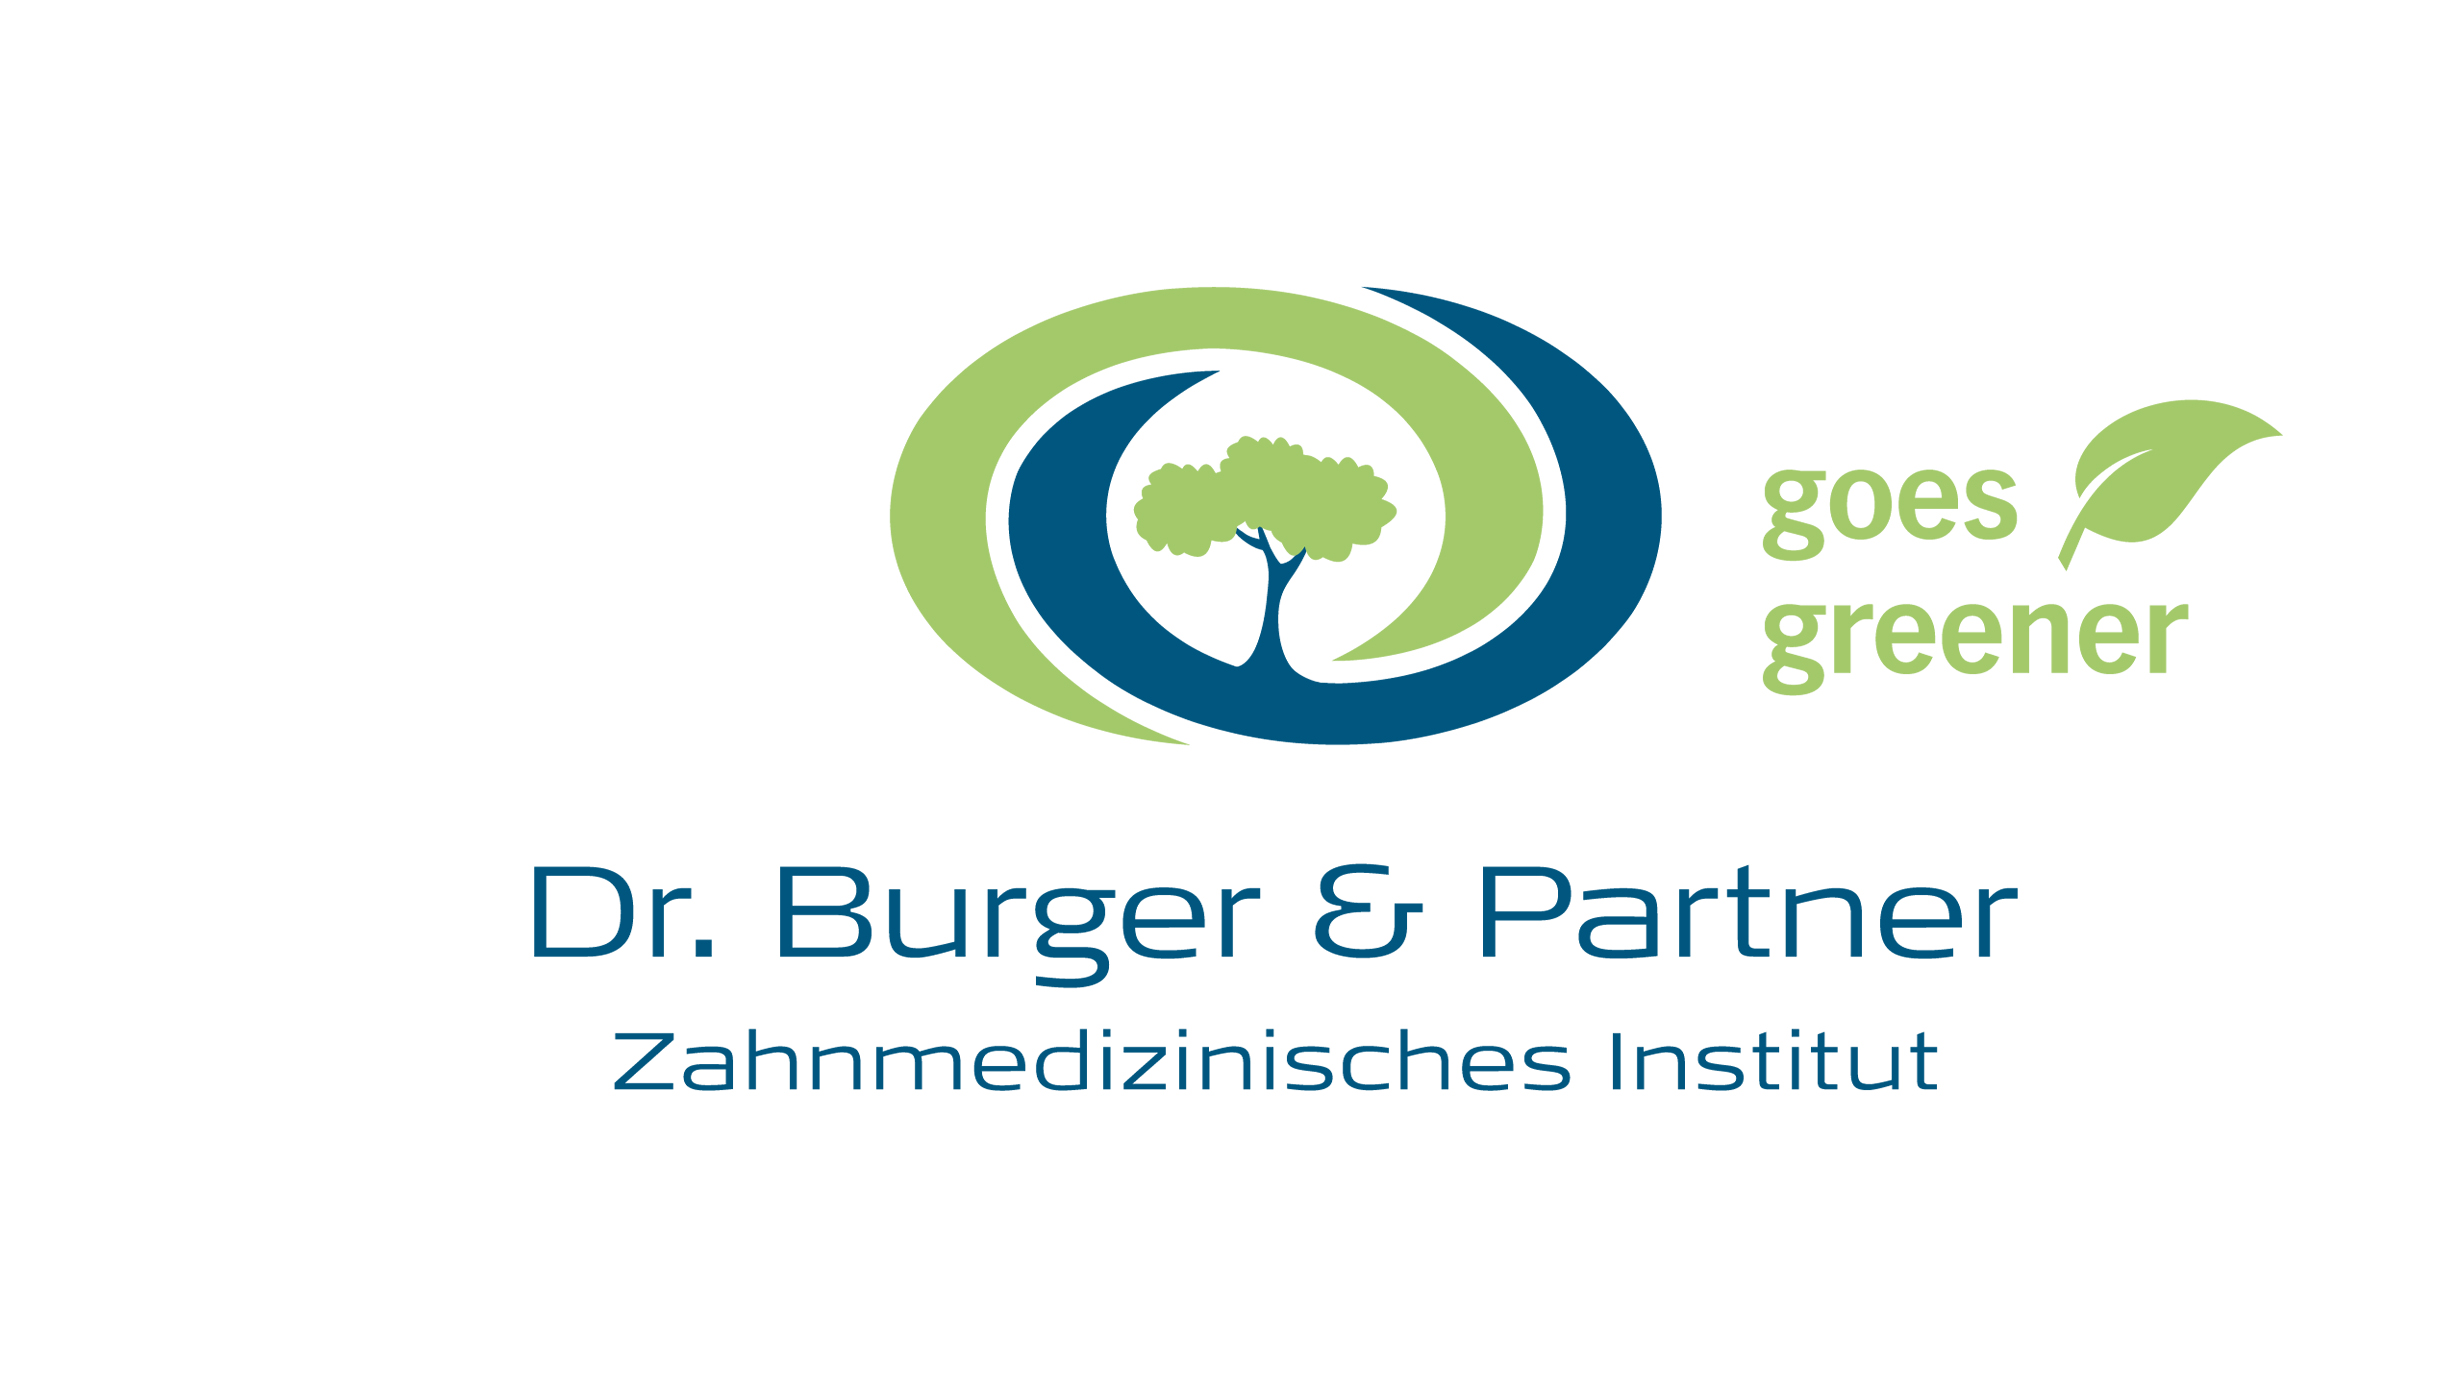 Dr Burger & Partner Goes Greener